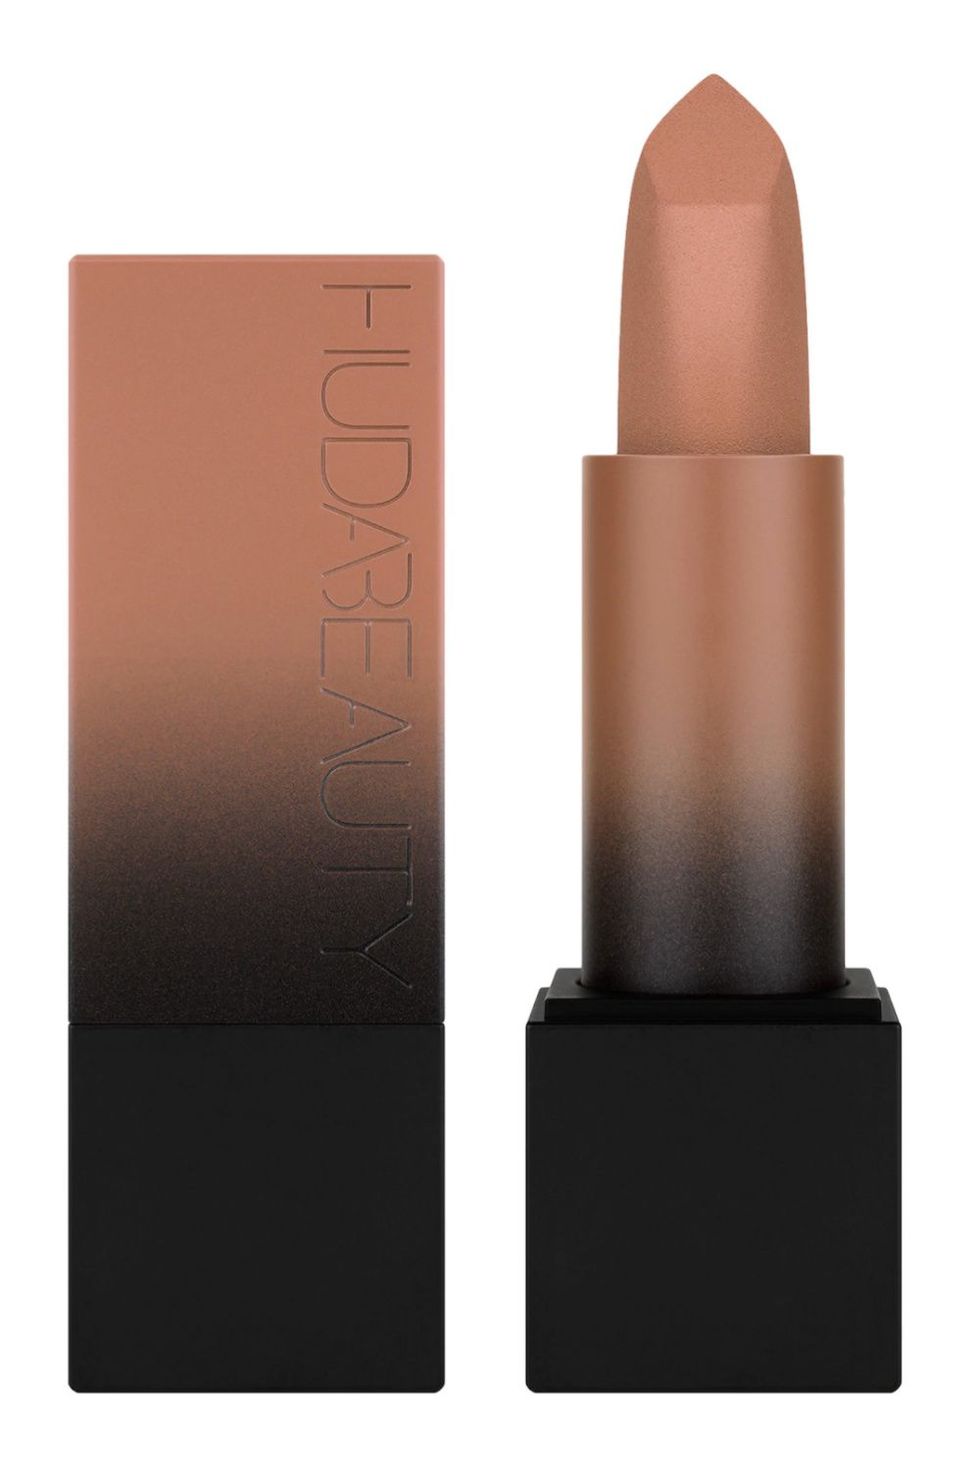 Huda Beauty Power Bullet Matte Lipstick in Staycation